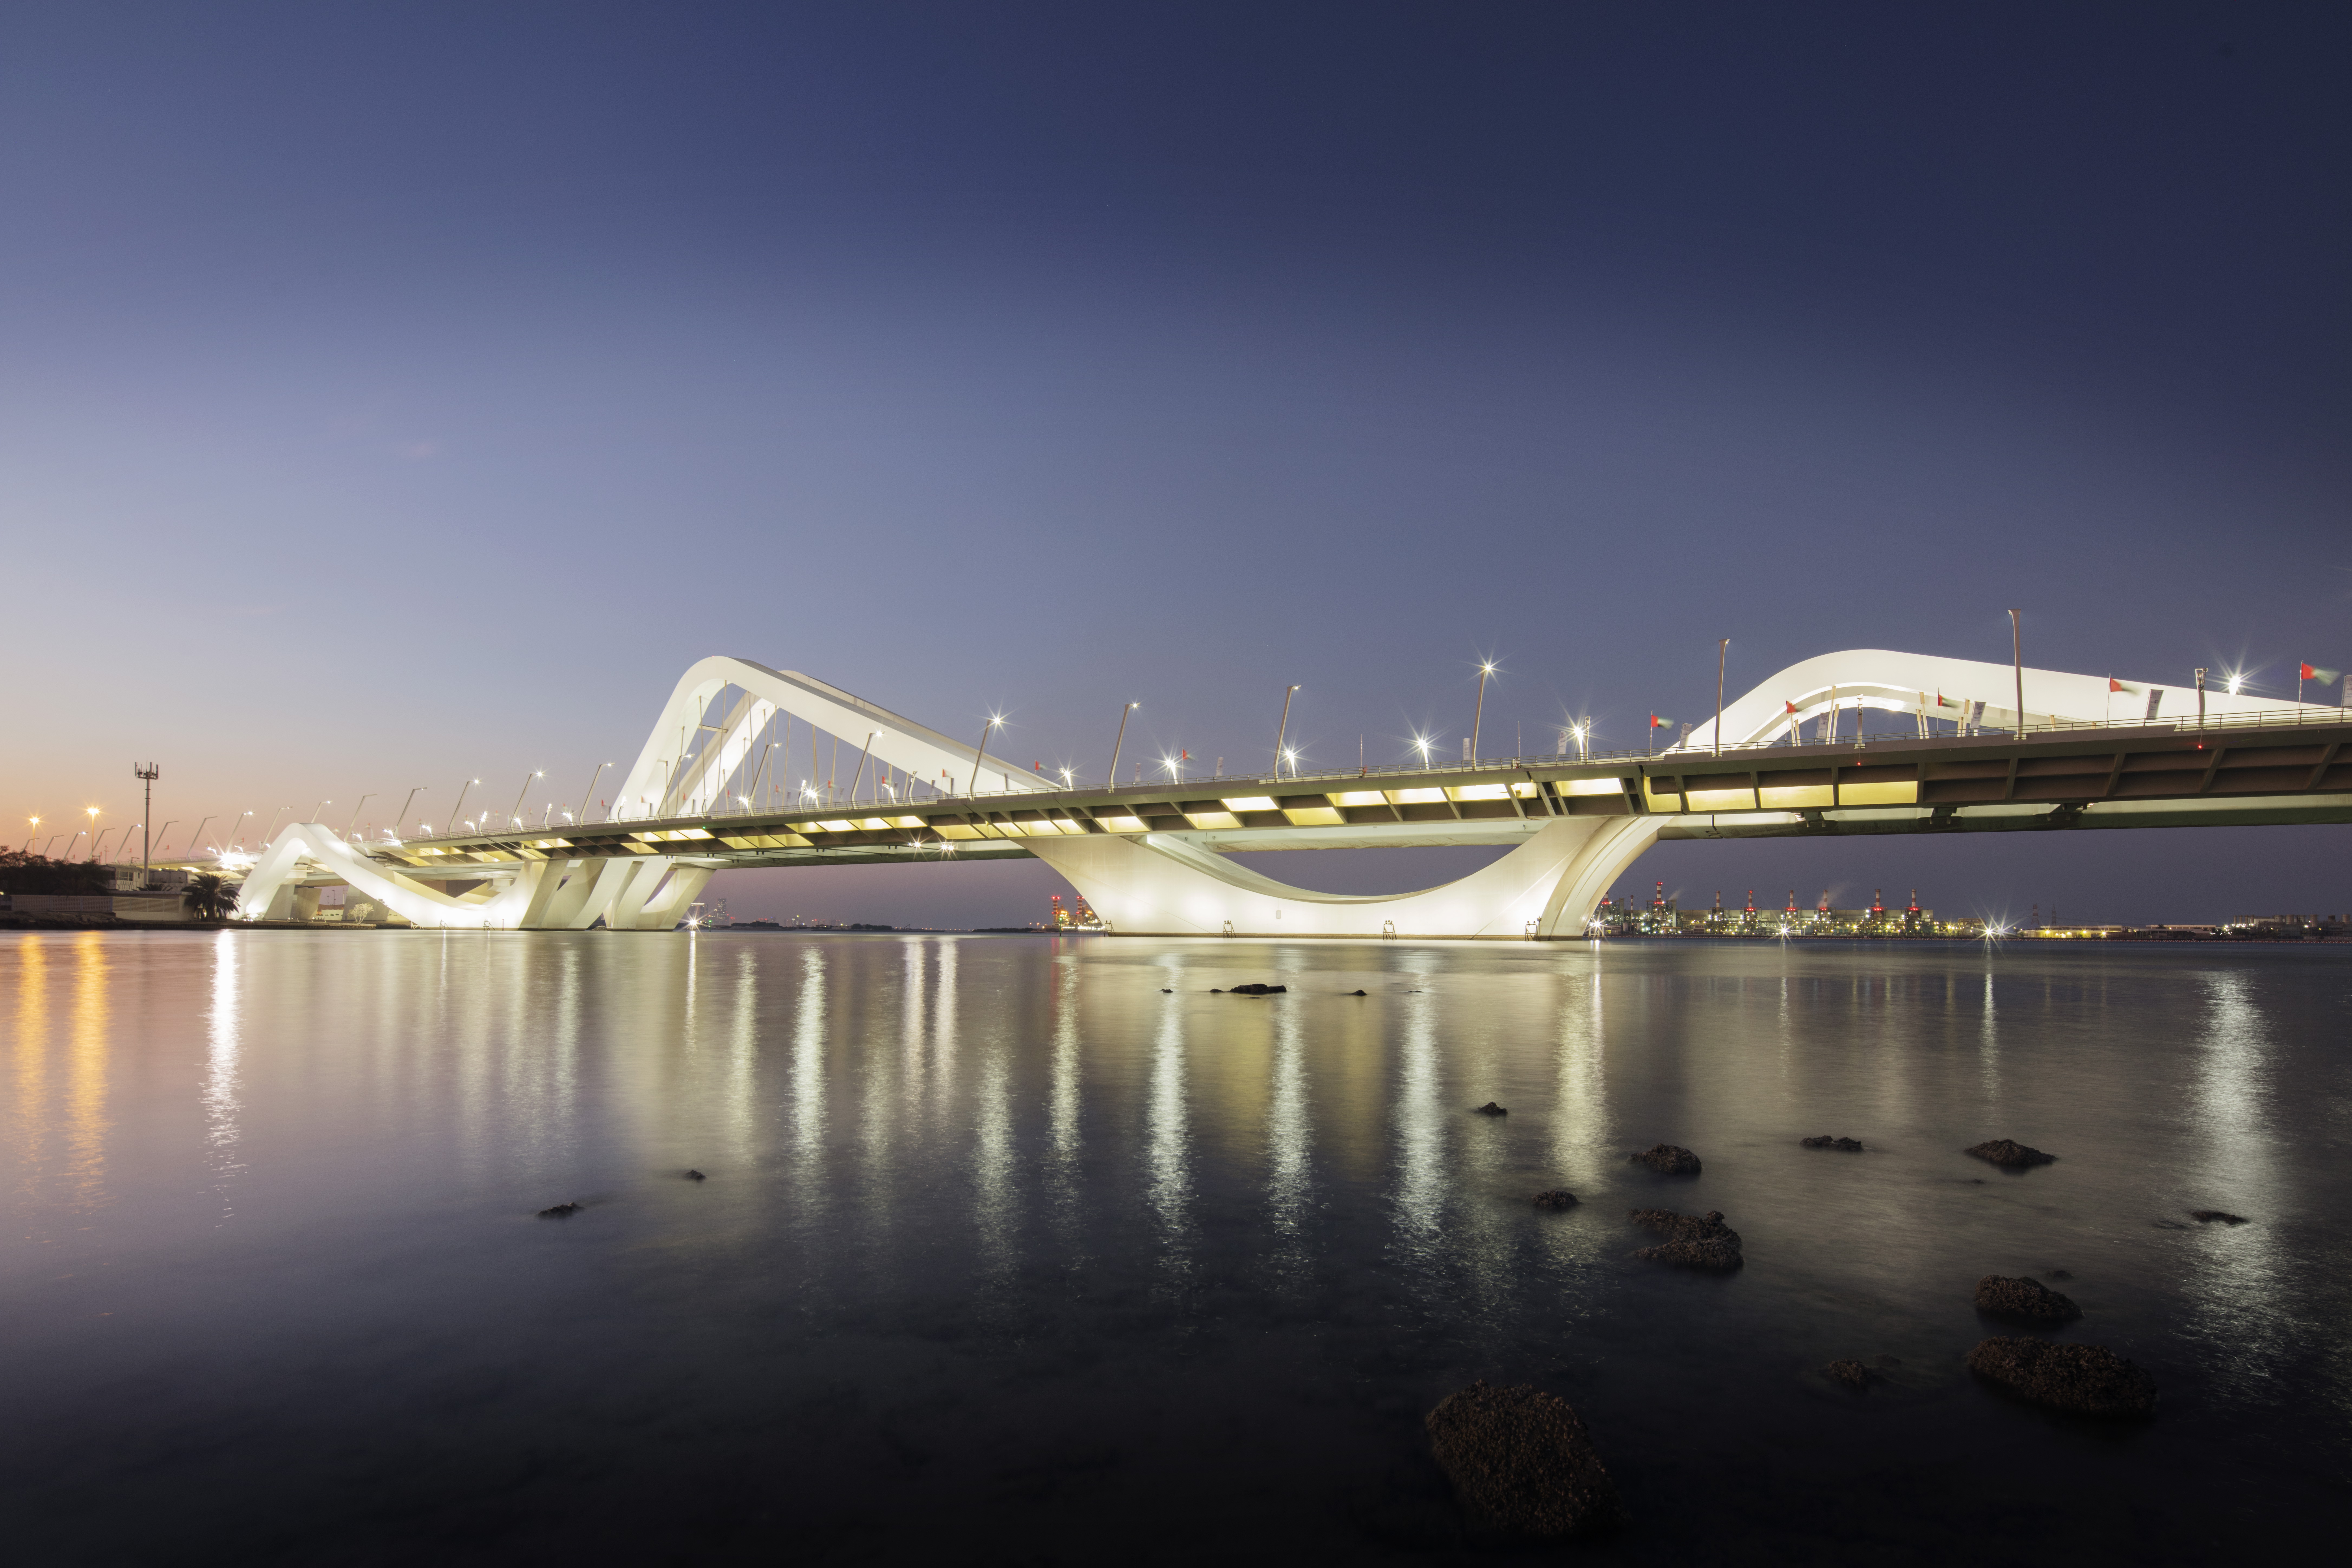 גשר שייך זאיד – Sheikh Zayed Bridge 